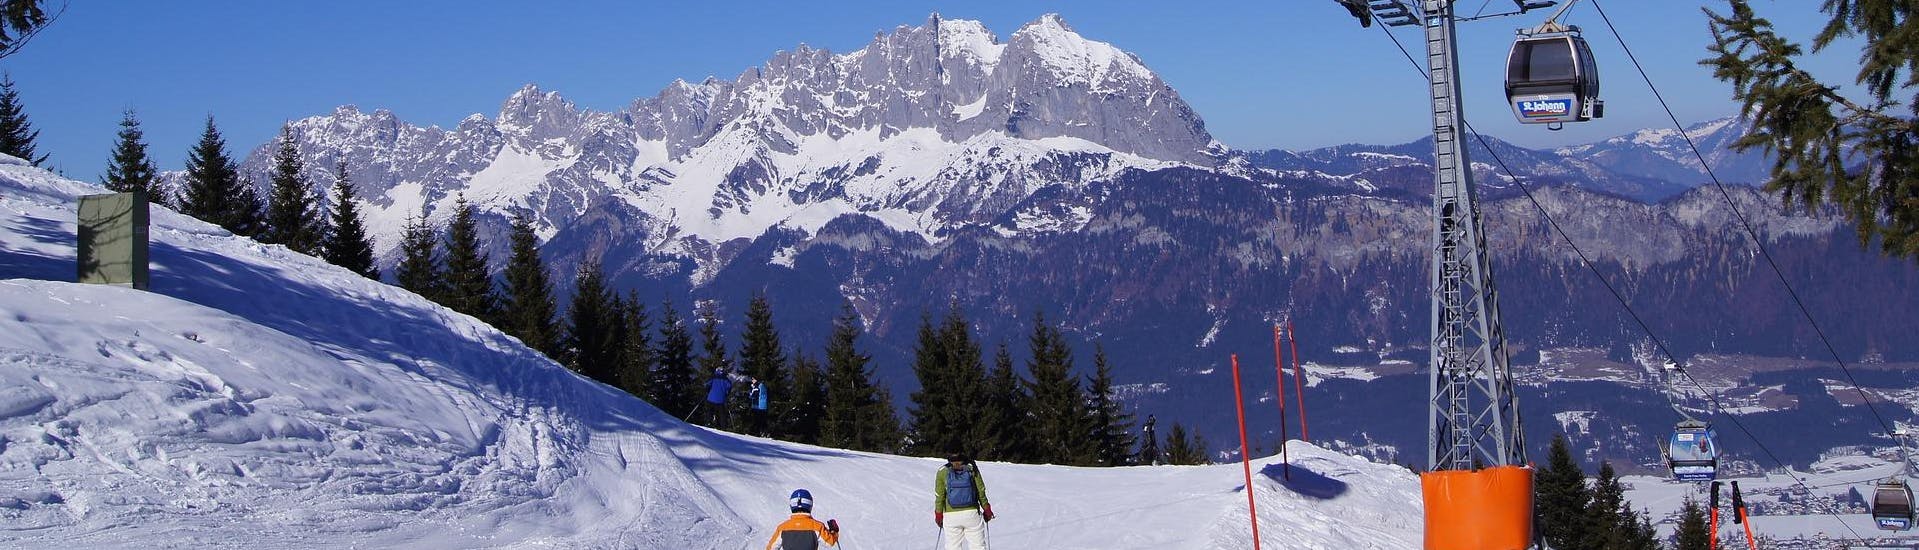 Adultos y niños esquiando en la estación de esquí de St Johann in Tirol